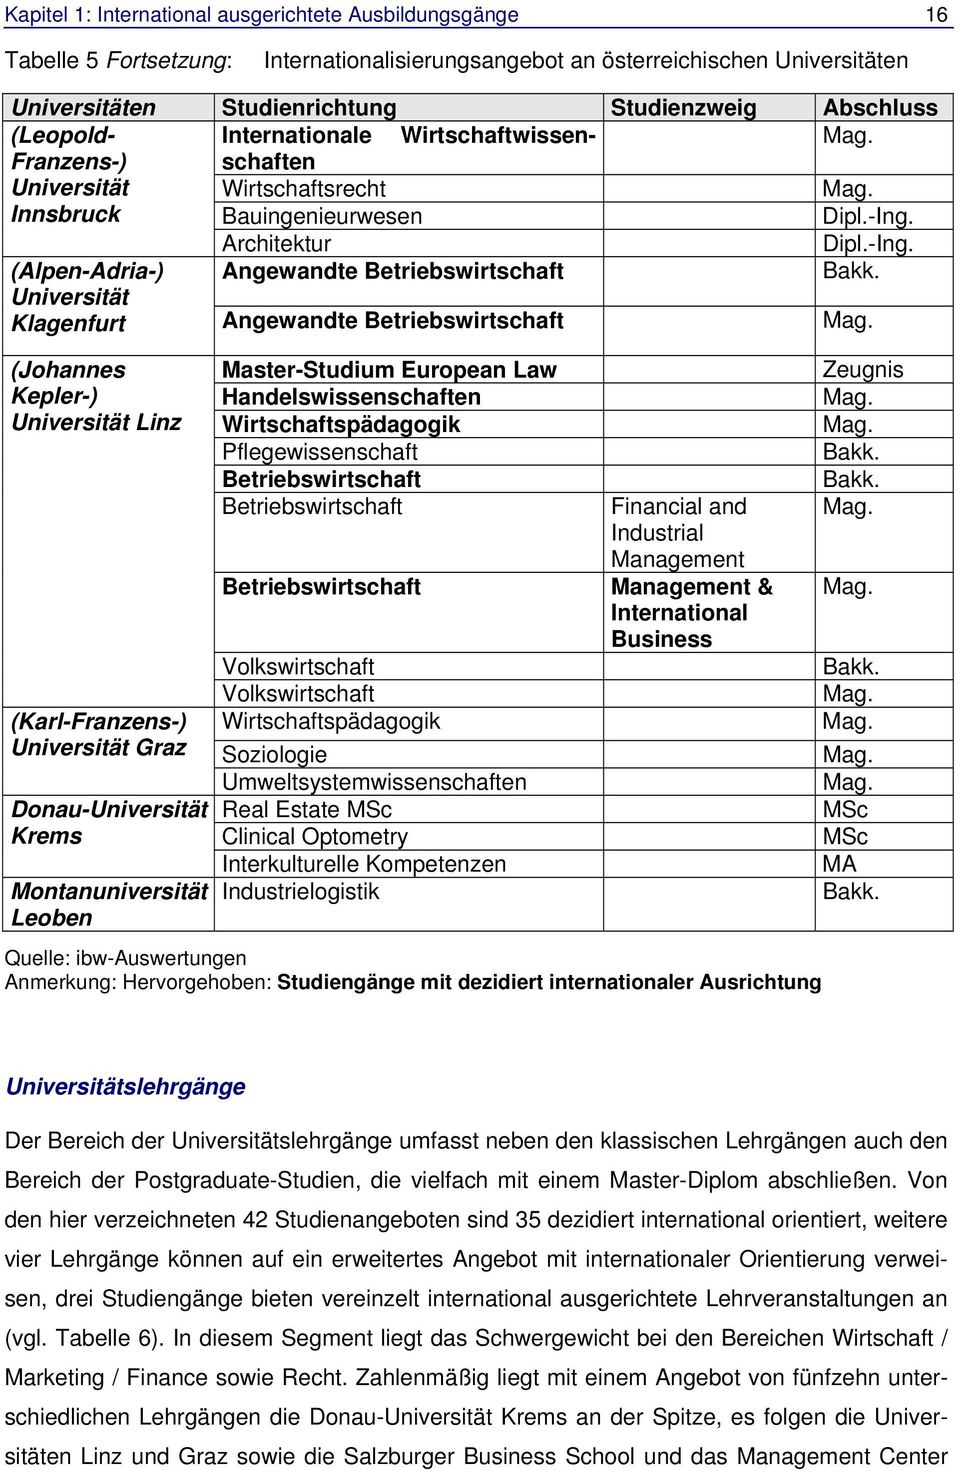 Architektur Dipl.-Ing. (Alpen-Adria-) Universität Klagenfurt Angewandte Betriebswirtschaft Angewandte Betriebswirtschaft Bakk. Mag.